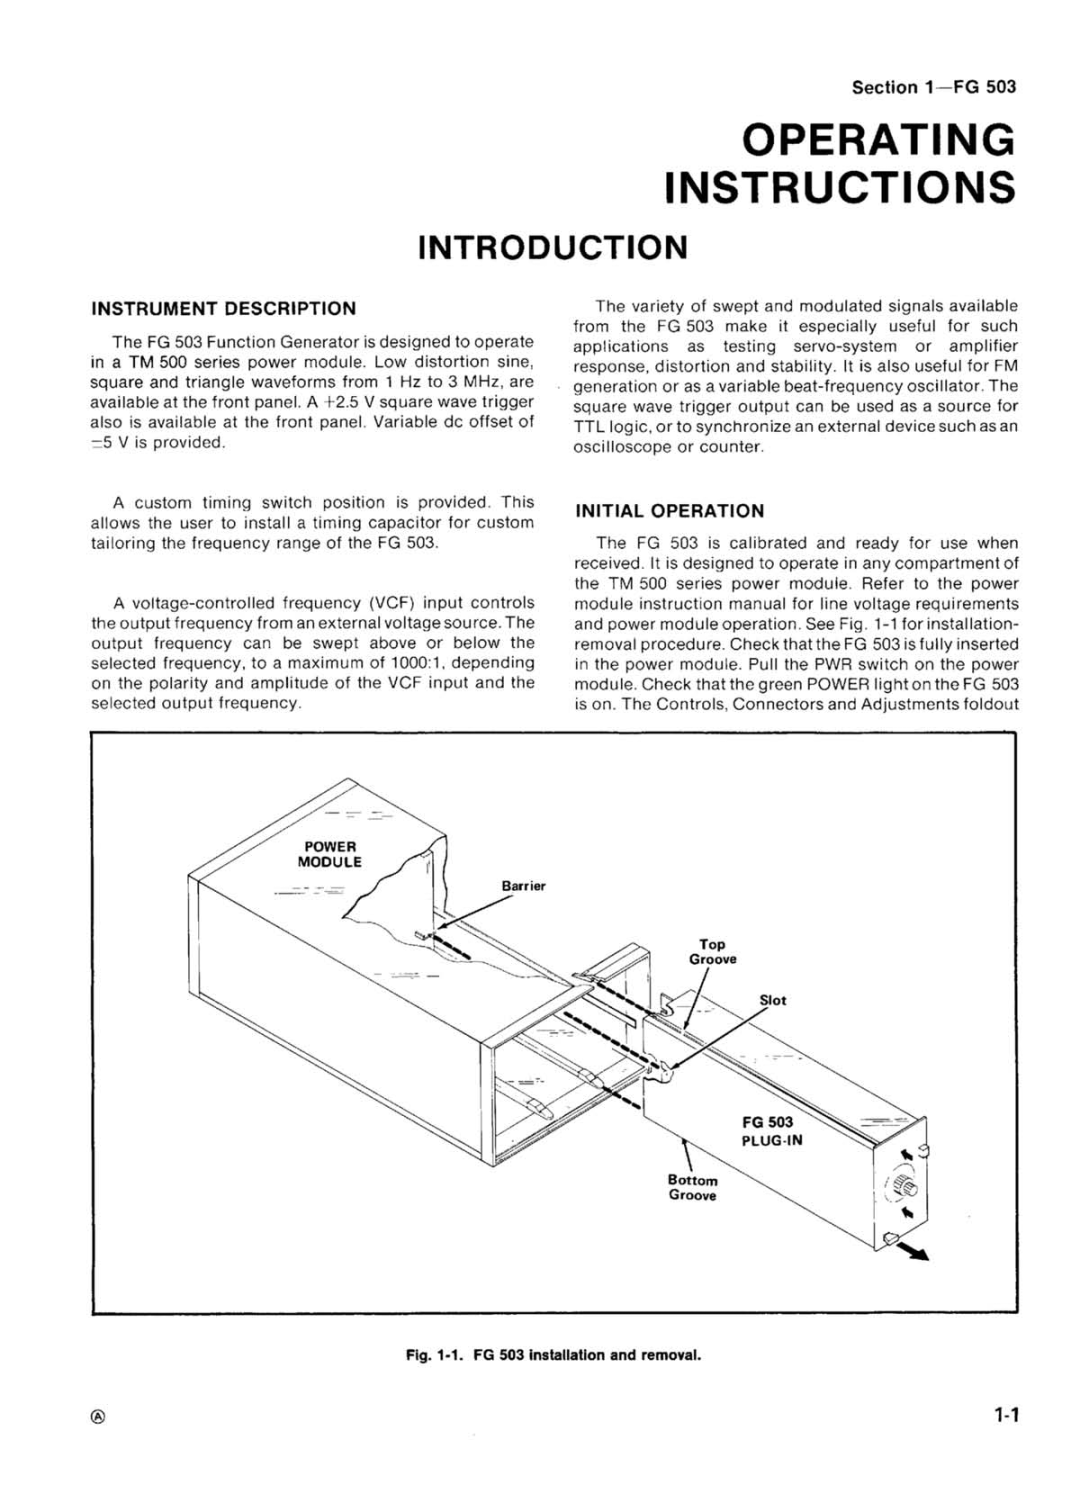 Tektronix FG 503 manual 